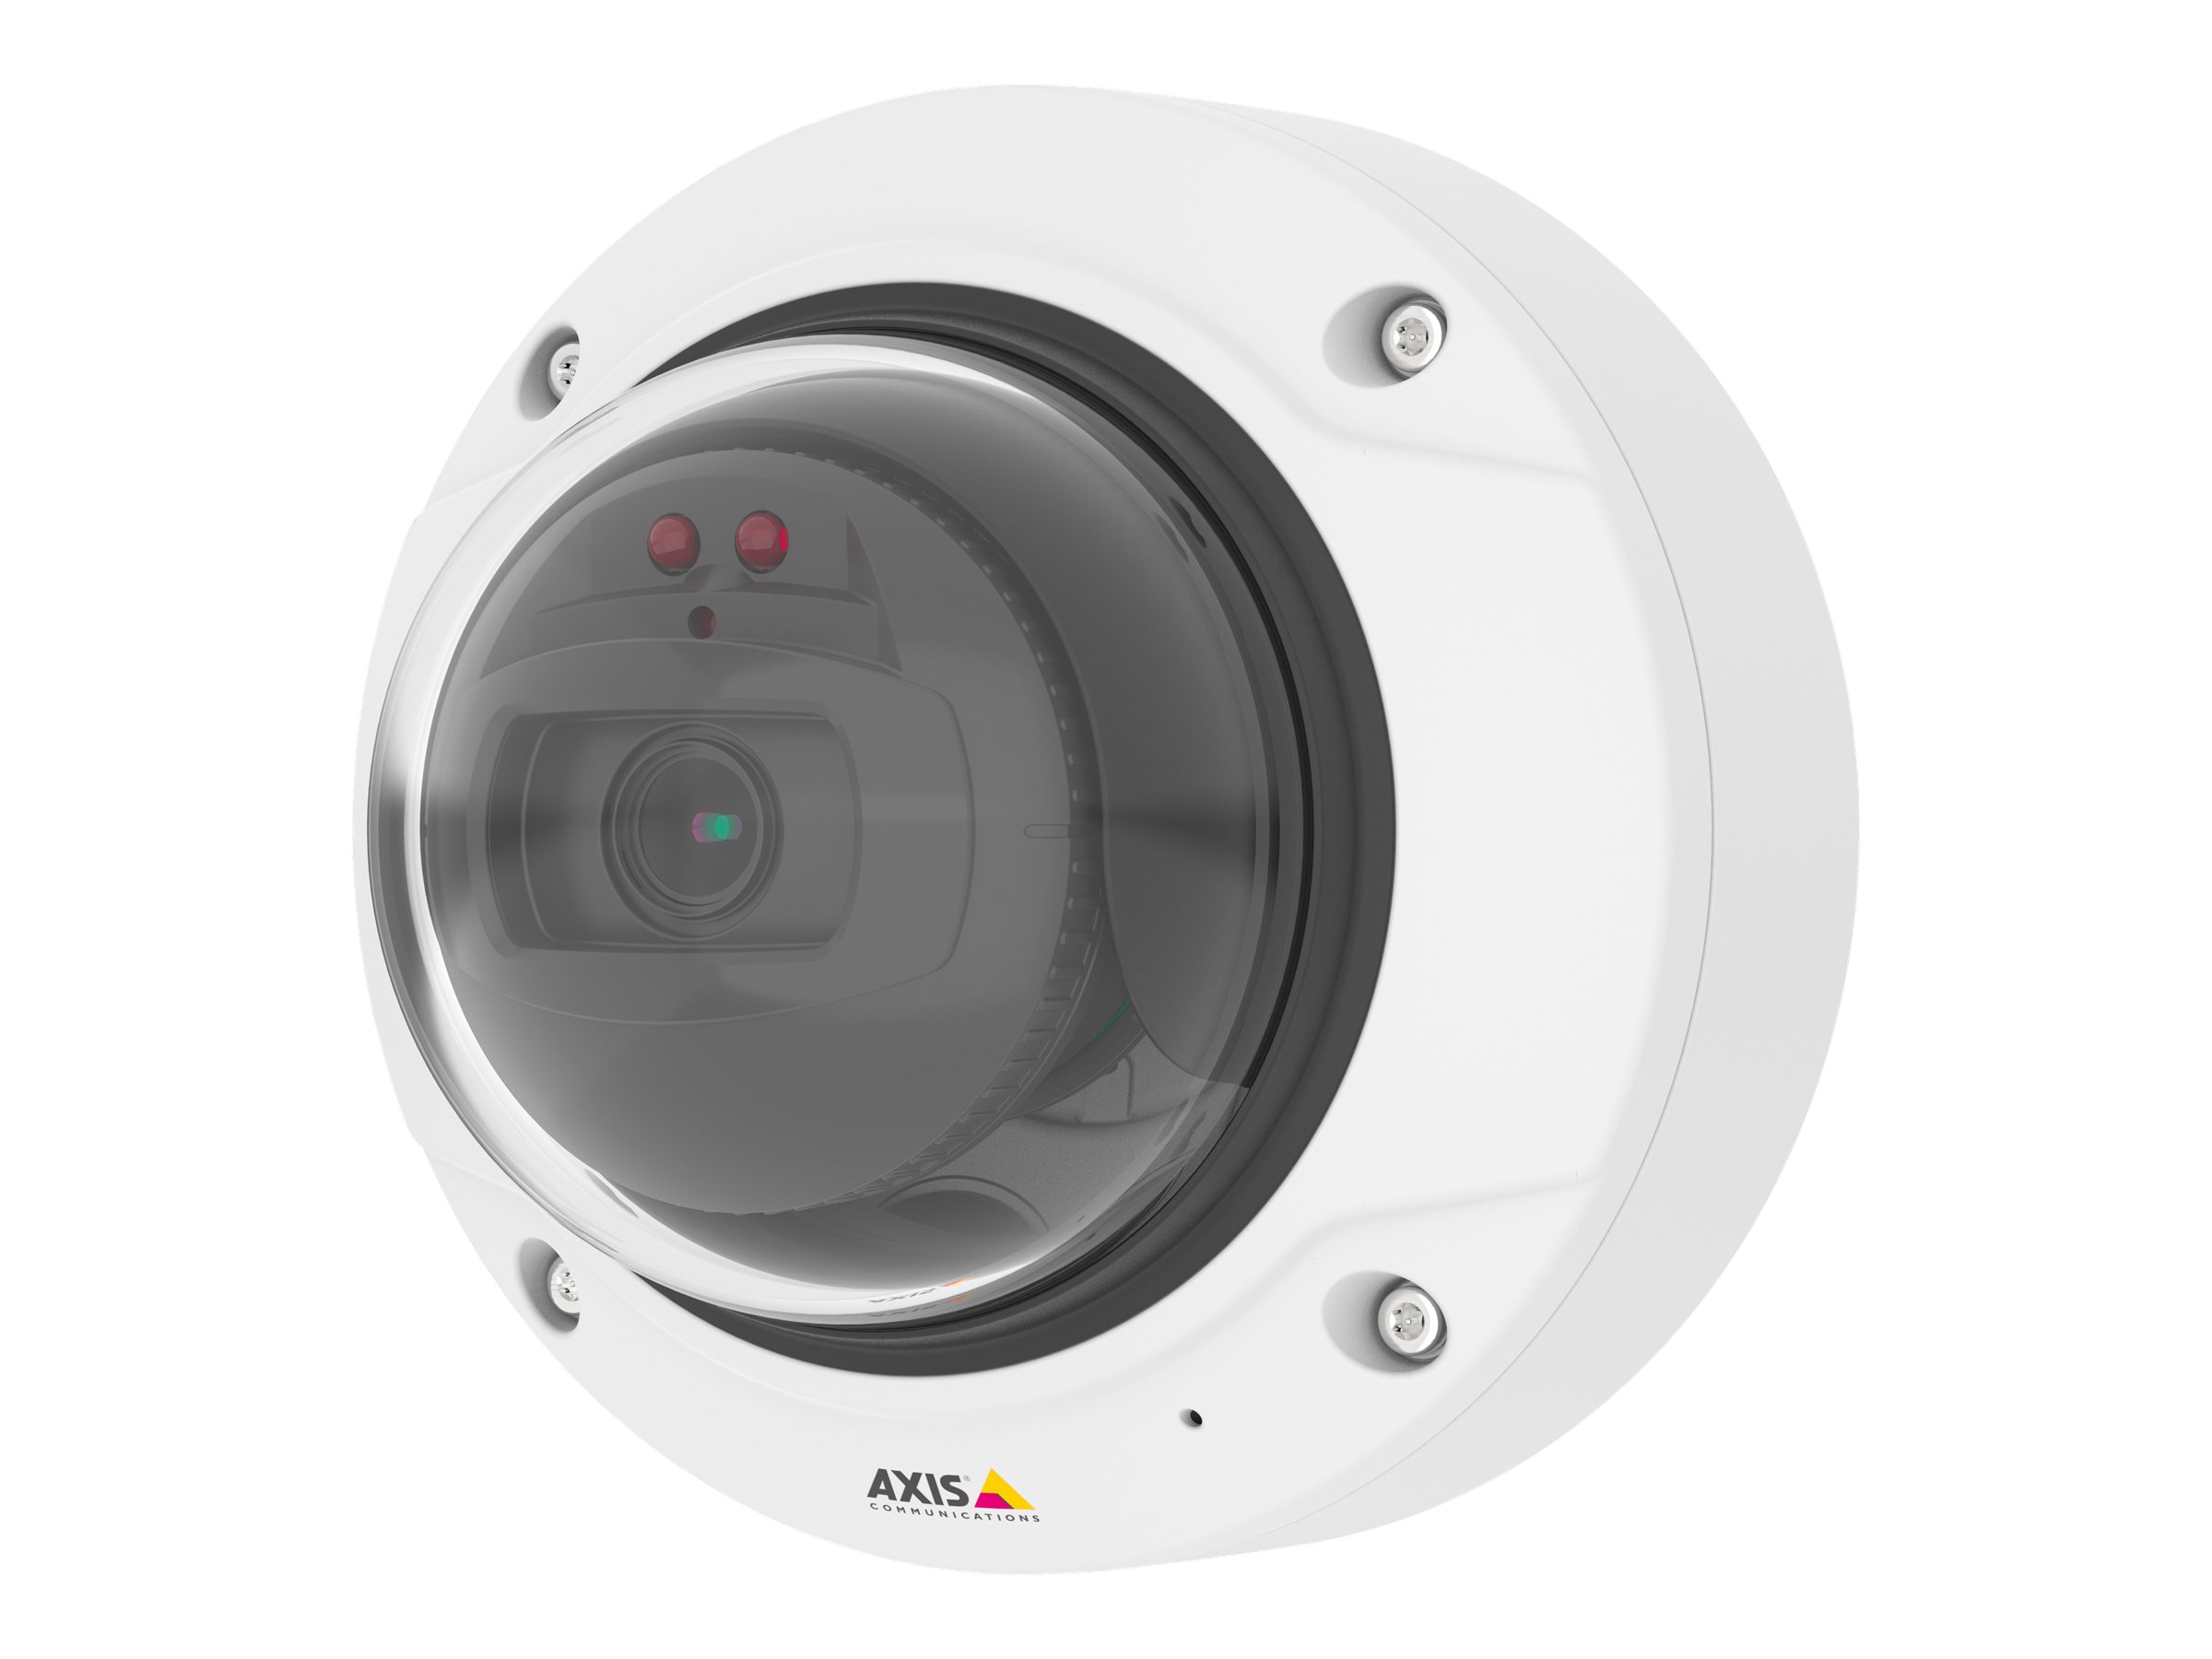 AXIS Q3515-LV - Netzwerk-Überwachungskamera - Kuppel - Außenbereich - staubdicht/vandalismusresistent/wasserdicht - Farbe (Tag&Nacht)